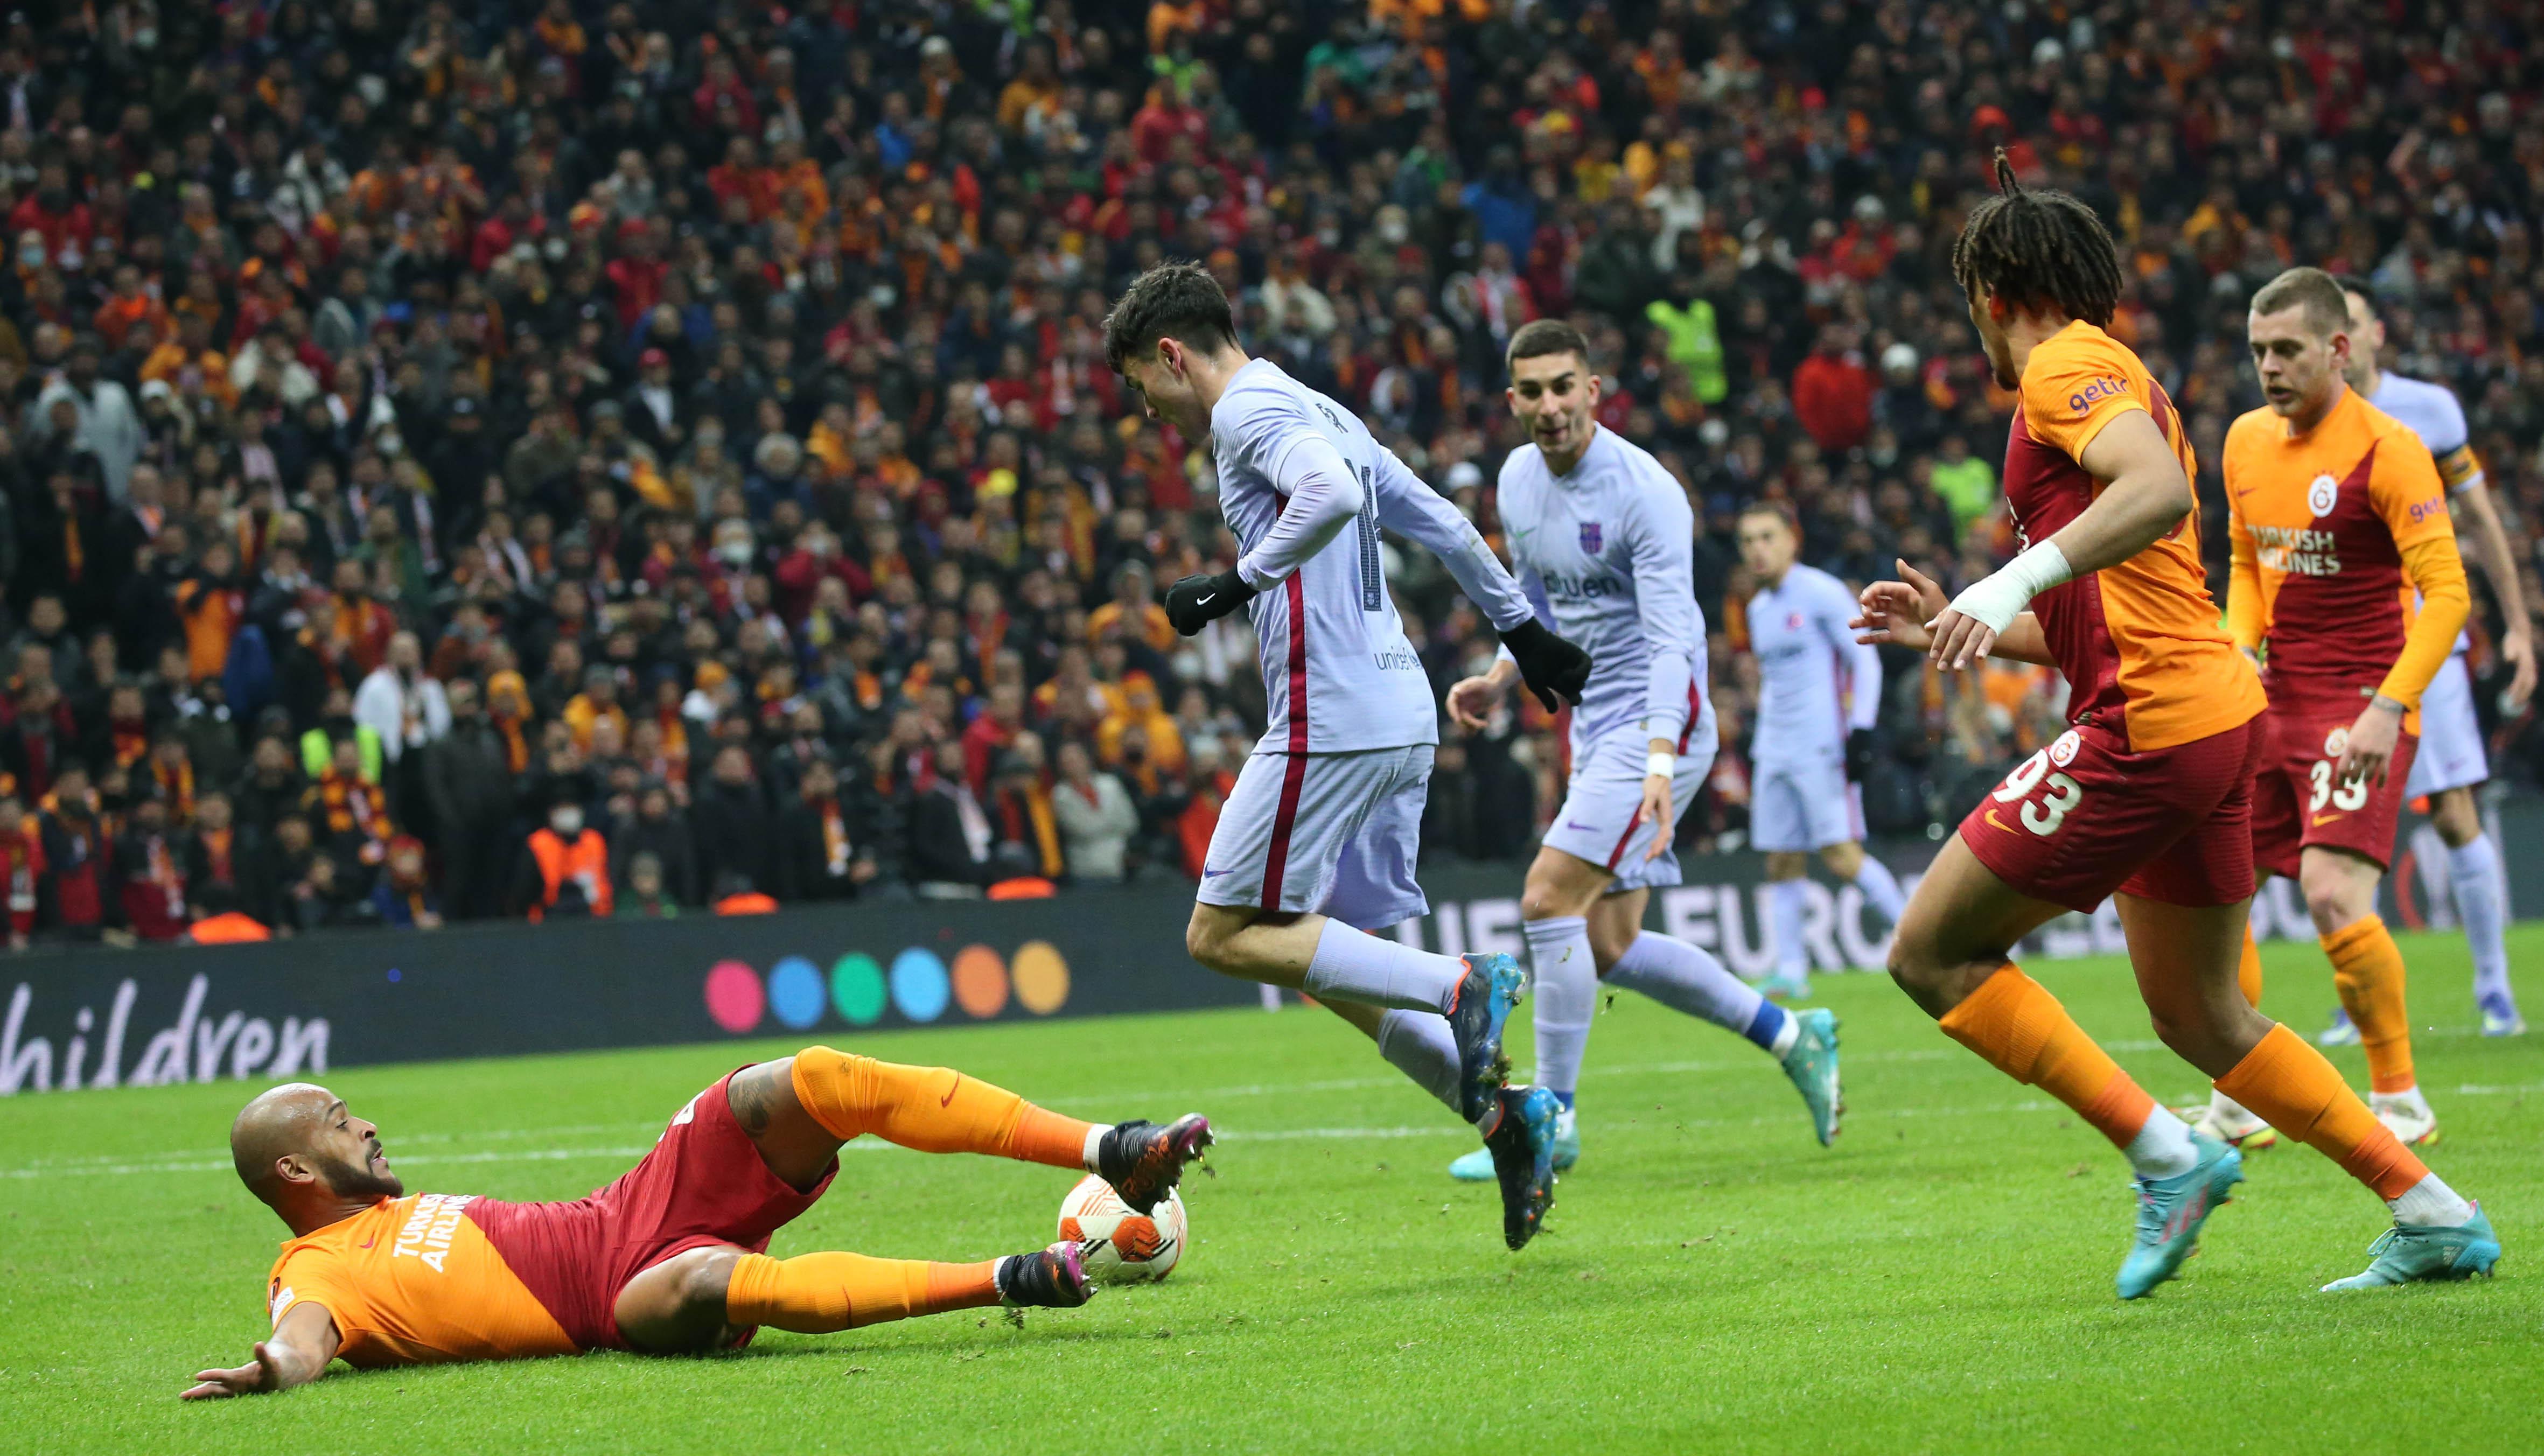 Pedriden Galatasaray taraftarına övgü: Hiç bu kadar sert bir atmosferde oynamamıştım